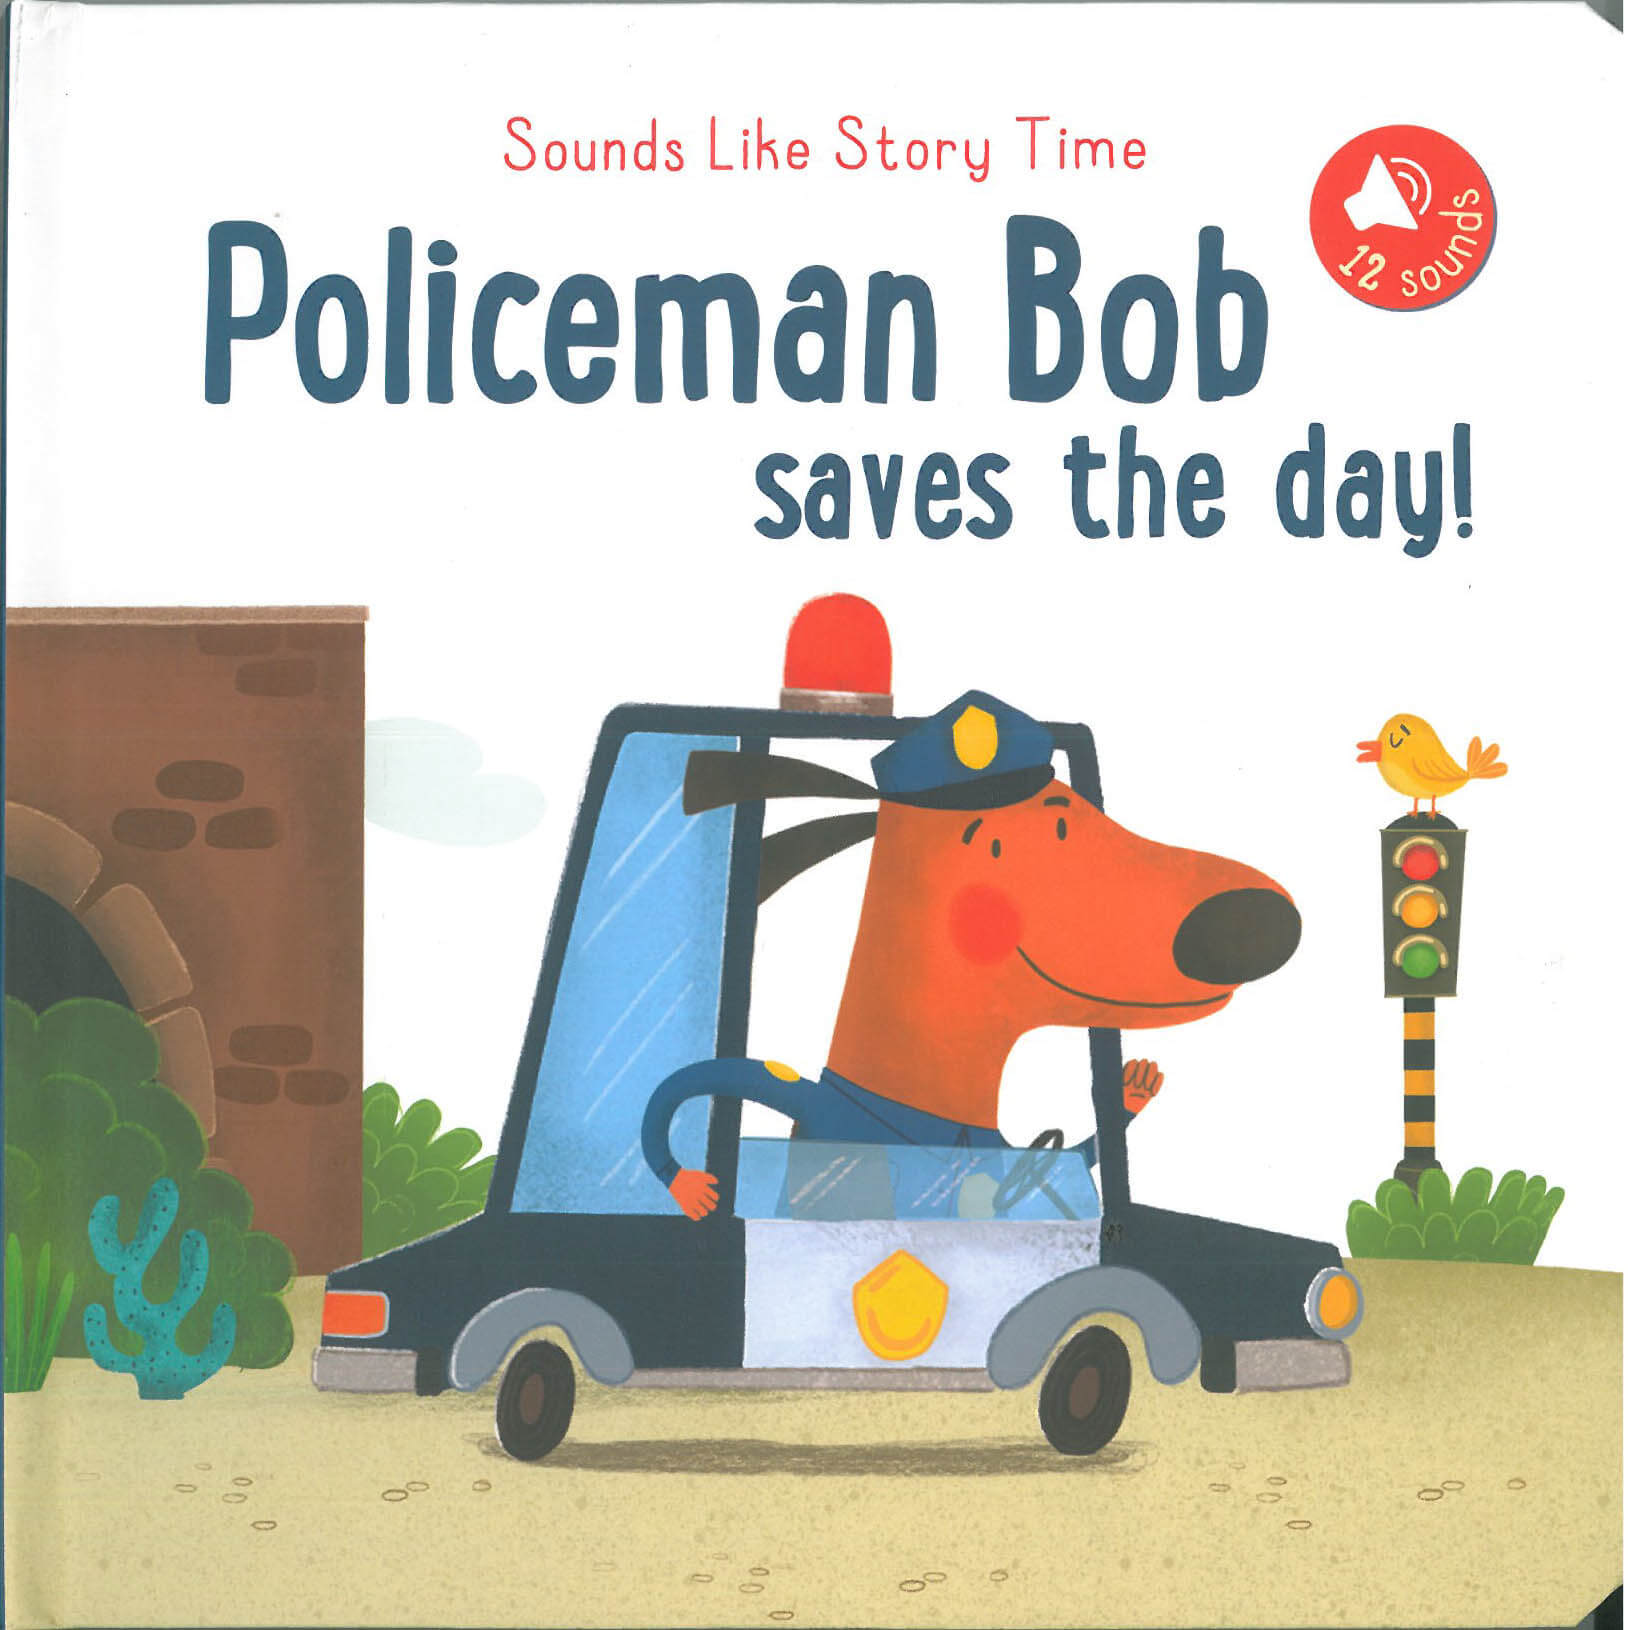 Policeman Bob saves the day!